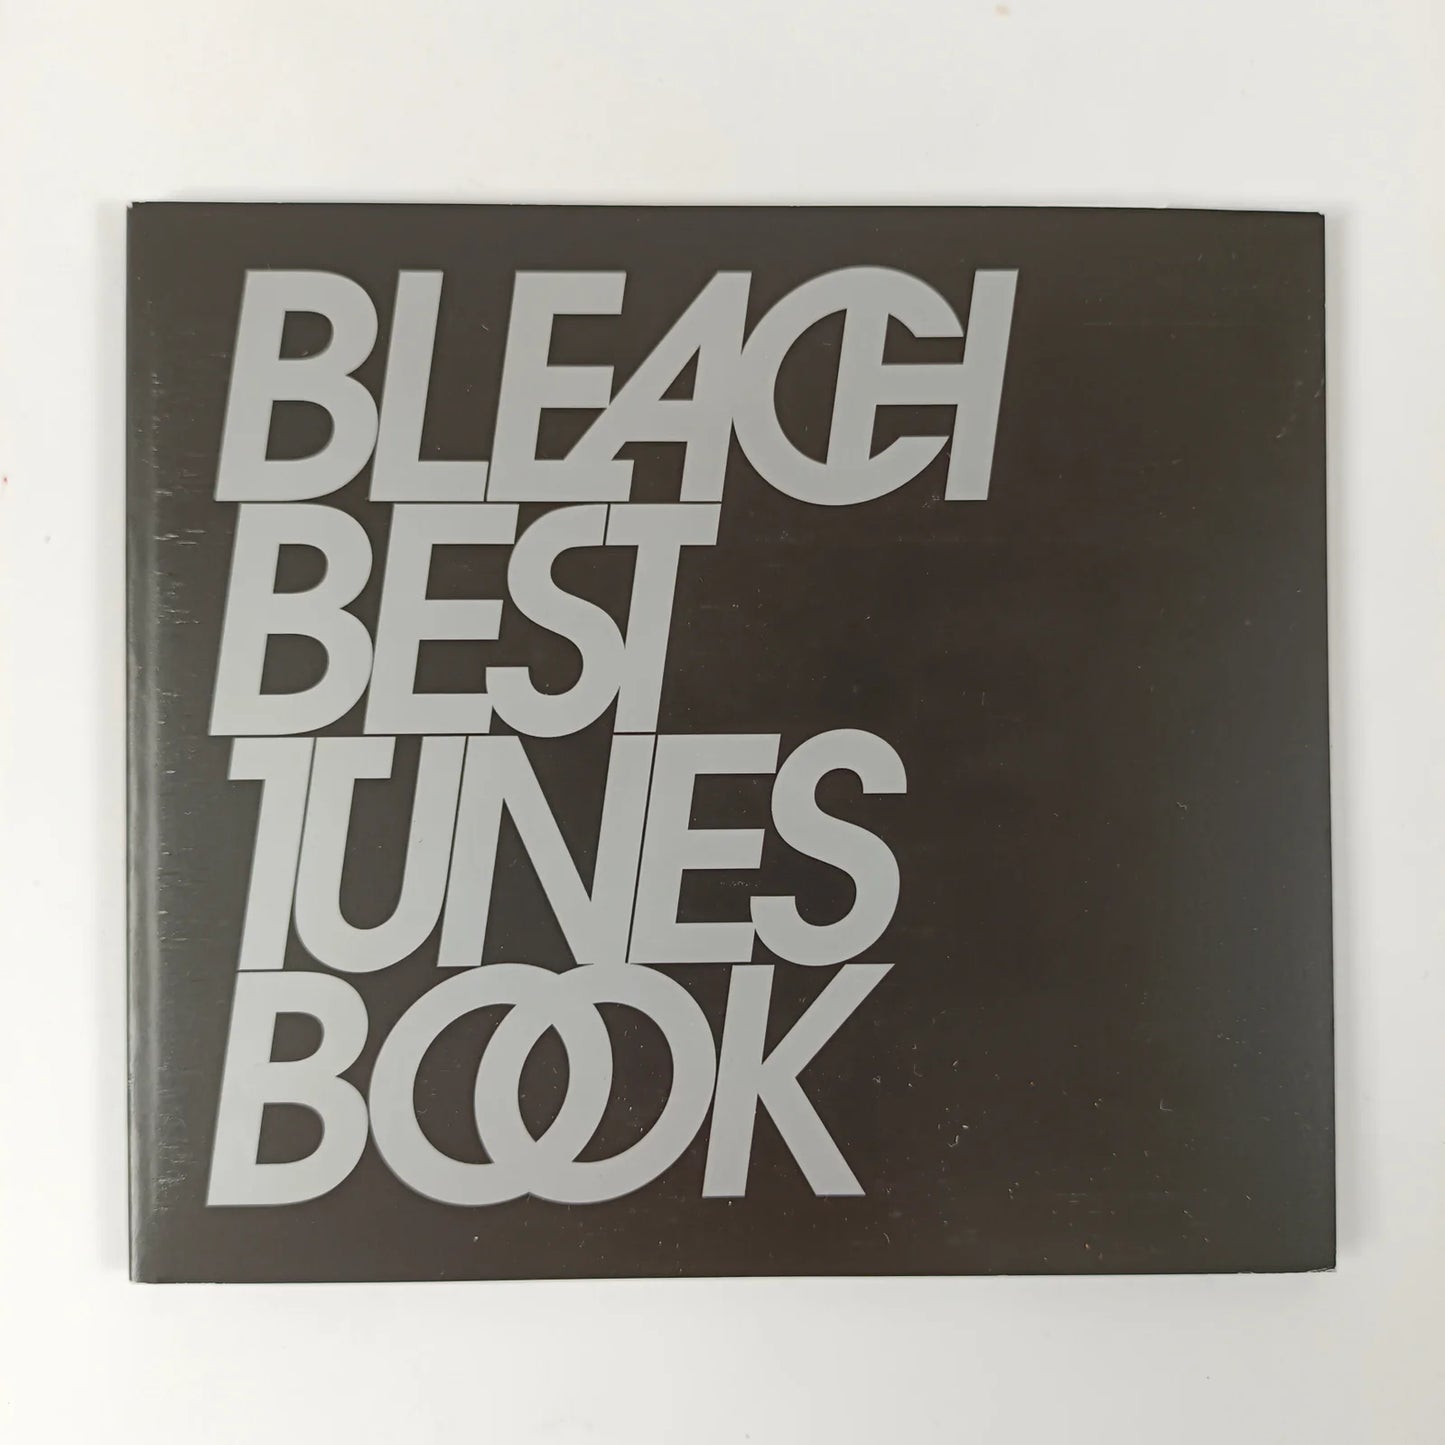 Bleach Best Tunes